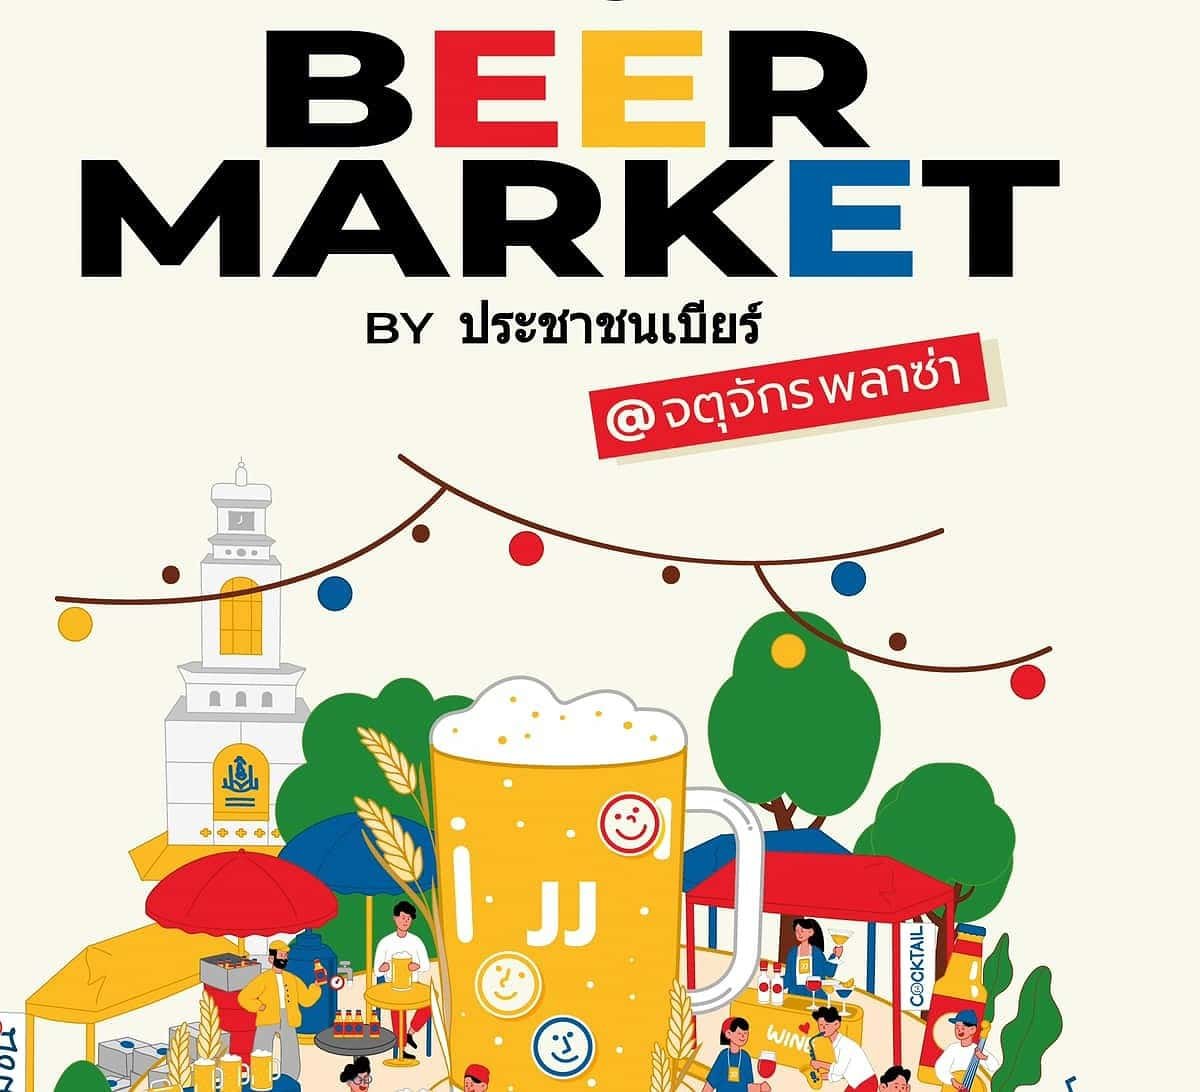 ประชาชนเบียร์(Beer People), the folk that brought you Beer Days, is organizing a new event in Bangkok happening near the famous Chatuchak weekend market.